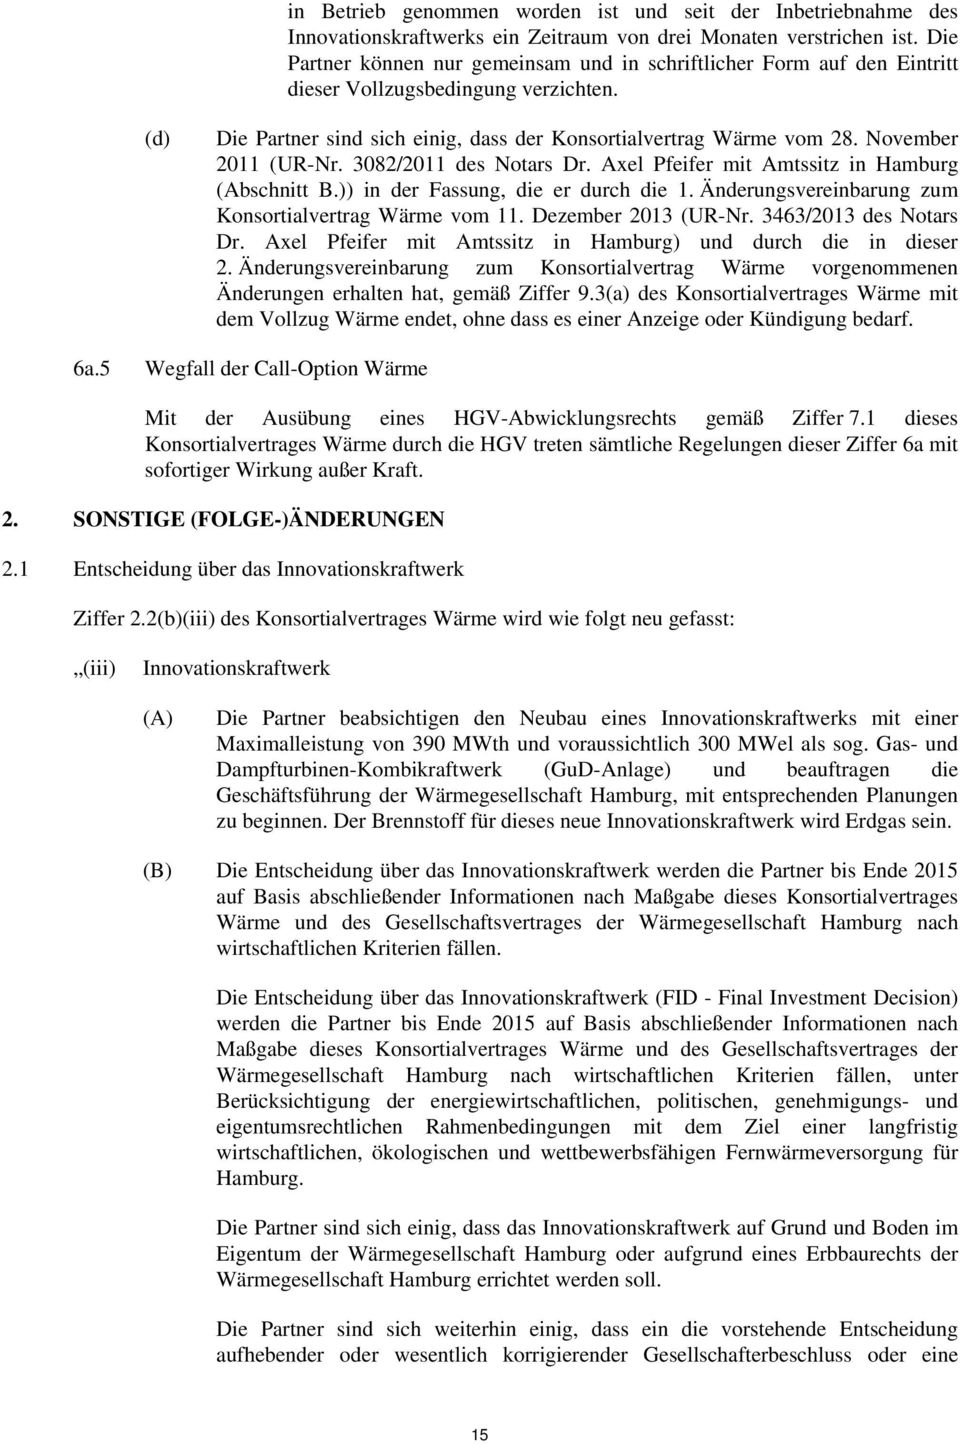 November 2011 (UR-Nr. 3082/2011 des Notars Dr. Axel Pfeifer mit Amtssitz in Hamburg (Abschnitt B.)) in der Fassung, die er durch die 1. Änderungsvereinbarung zum Konsortialvertrag Wärme vom 11.